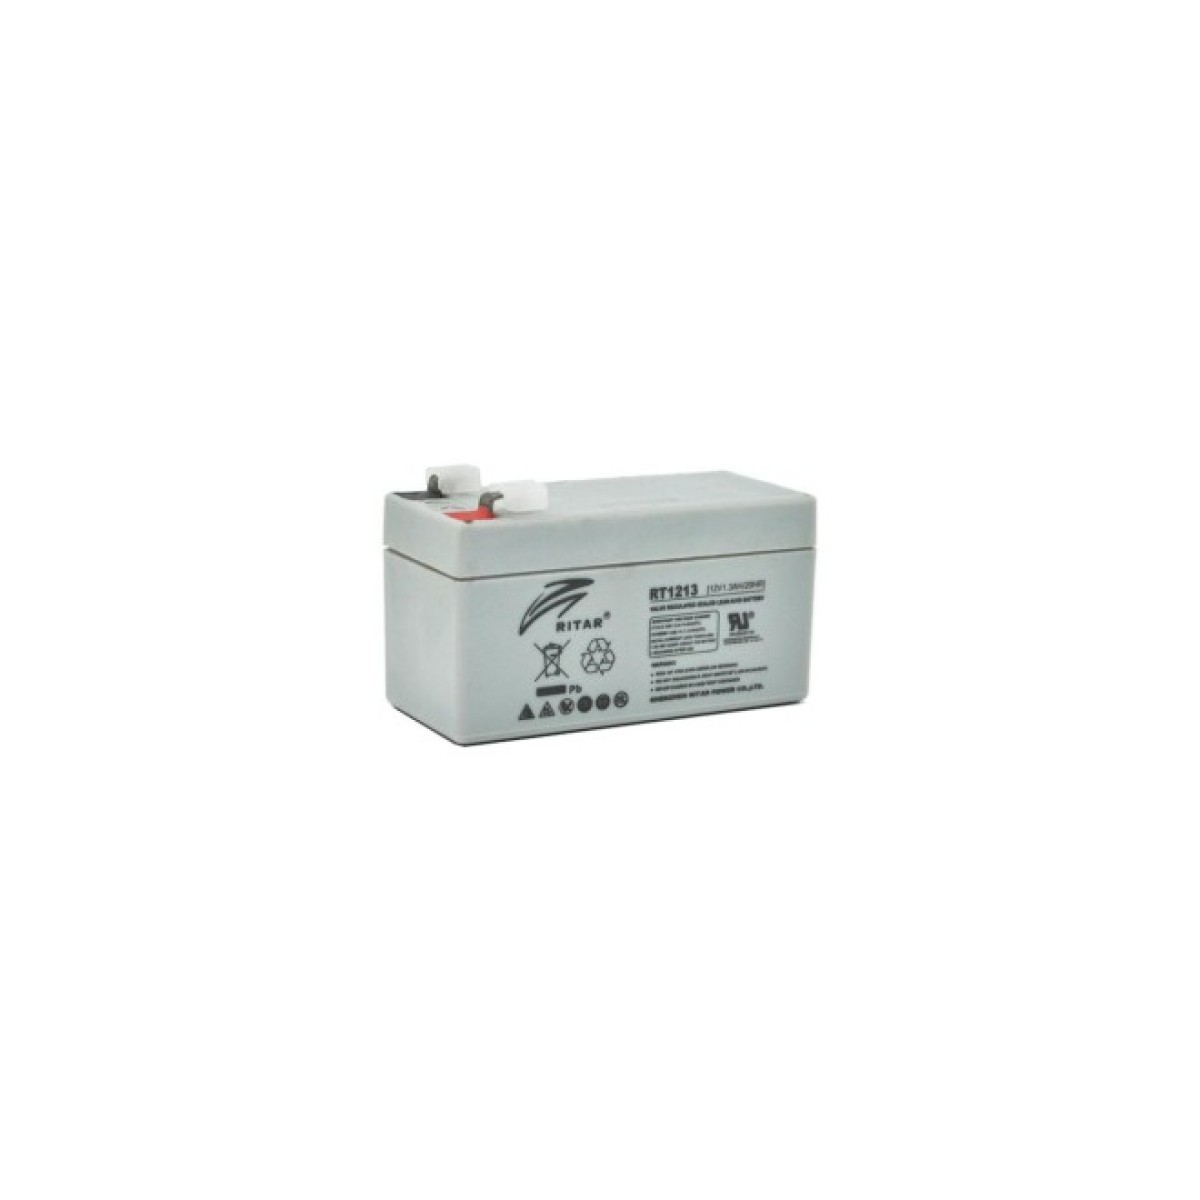 Батарея к ИБП Ritar AGM RT1213, 12V-1.3Ah (RT1213) 256_256.jpg